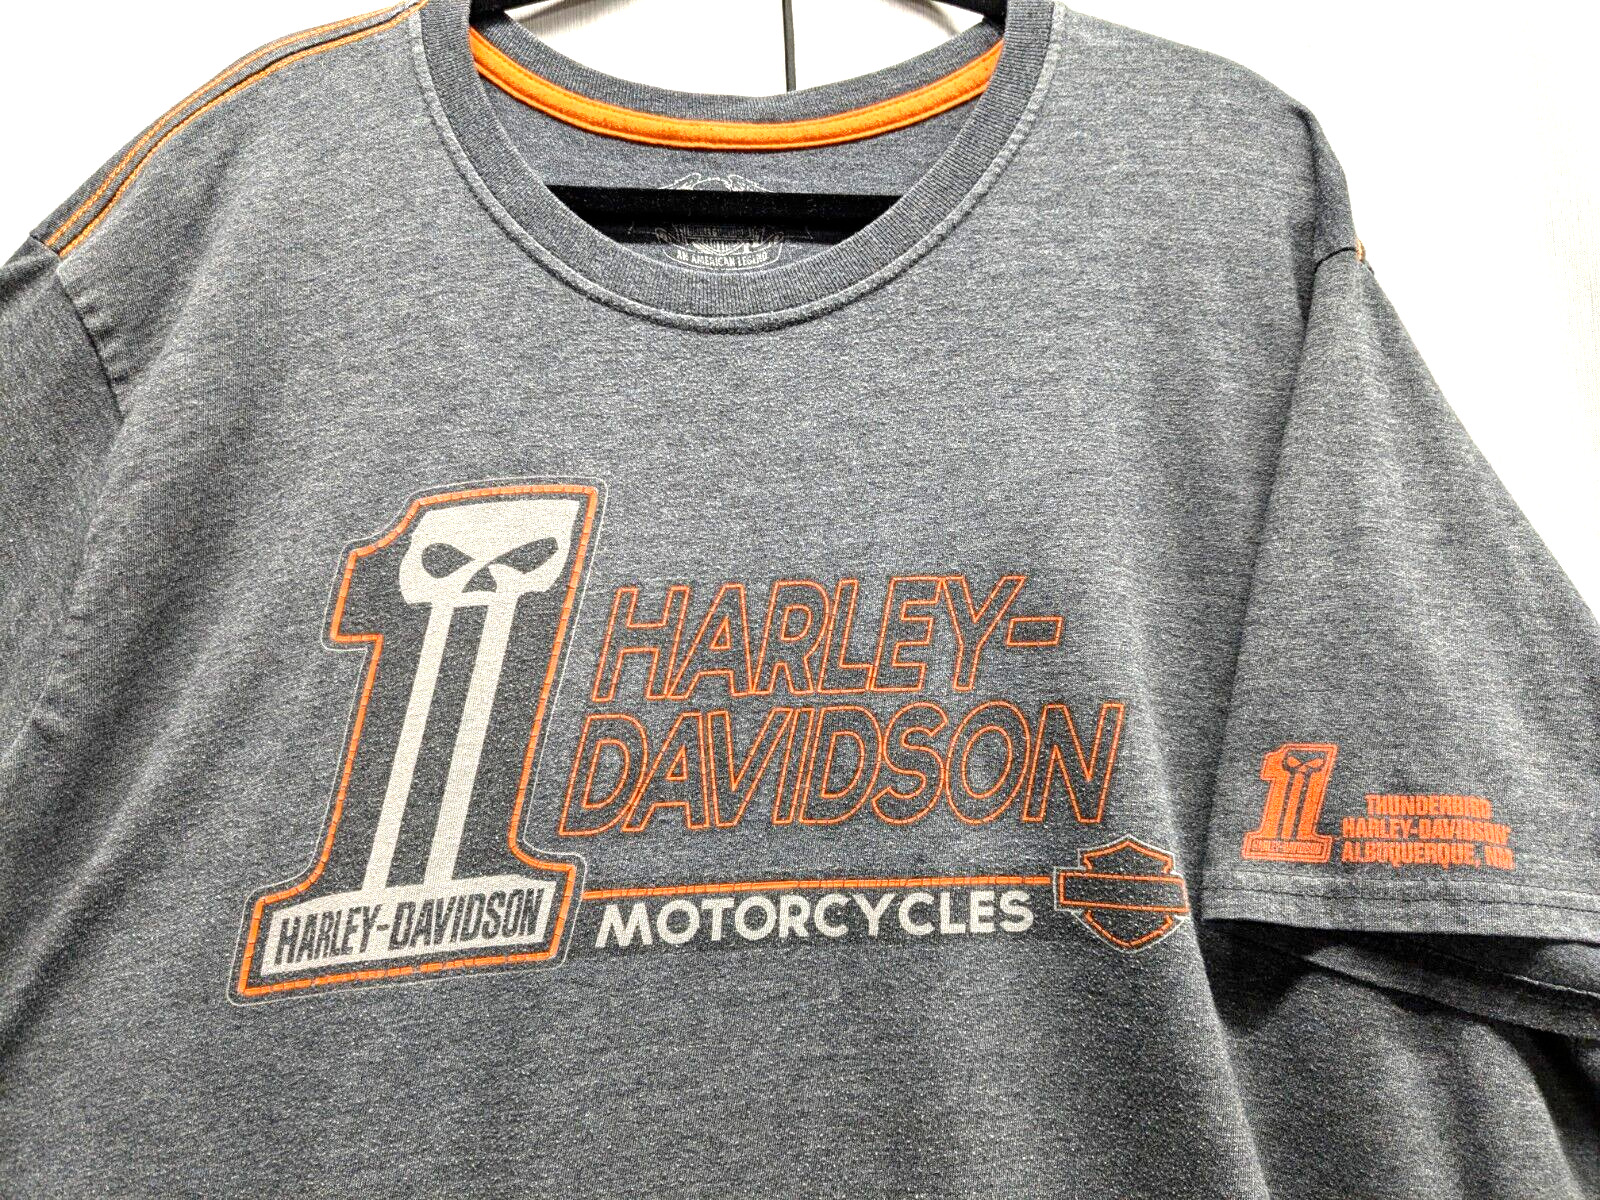 Harley Davidson Thunderbird Albuquerque New Mexico Tshirt Gray Mens Size 3XL